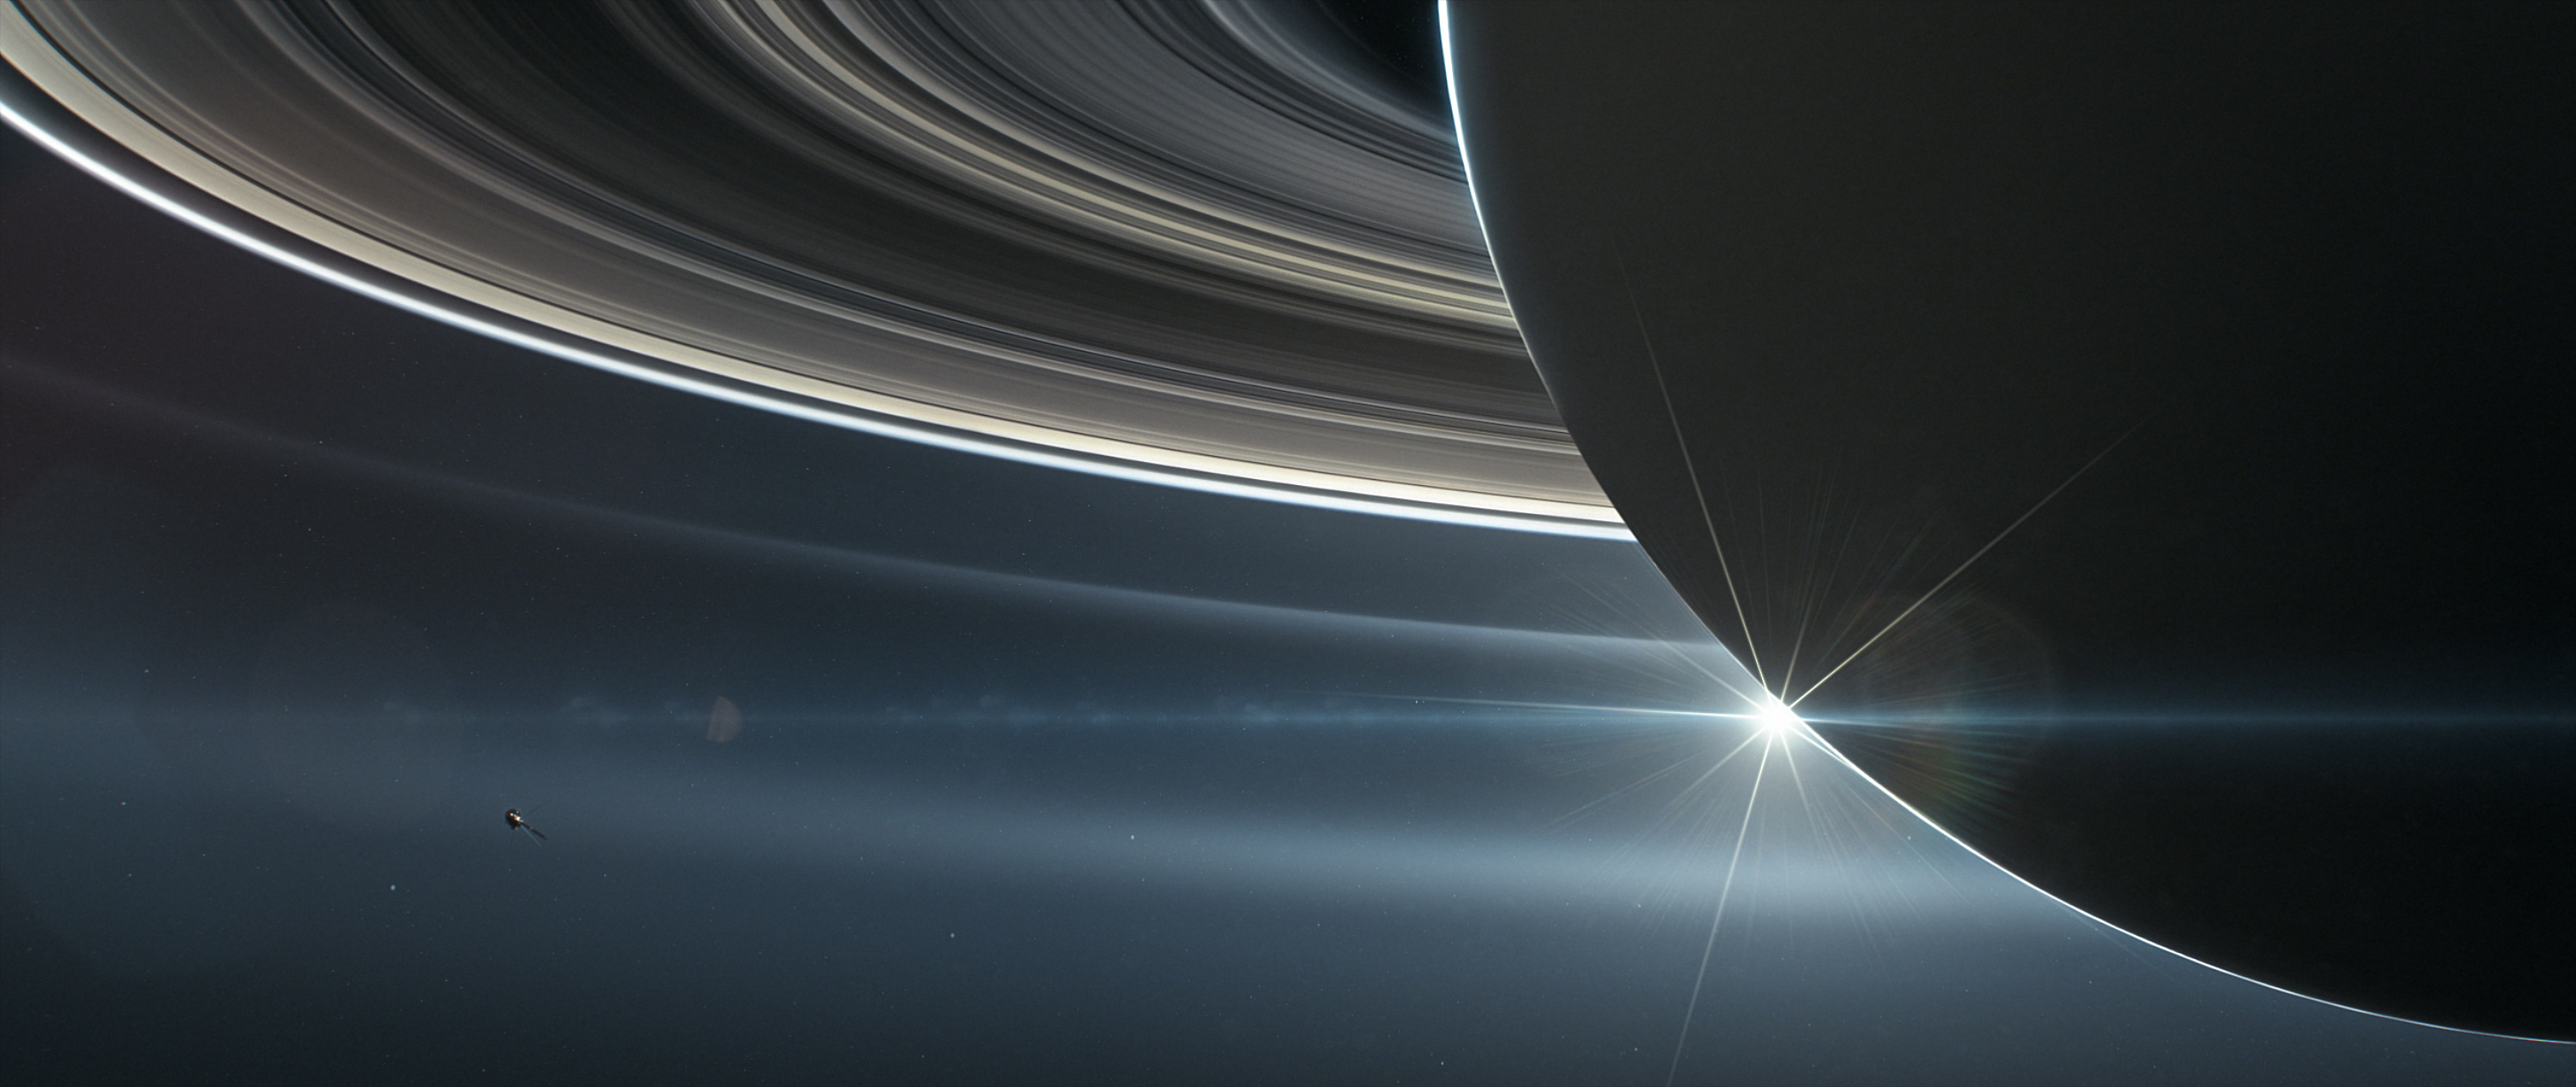 Anillos negros y dorados de Saturno captados por Cassini